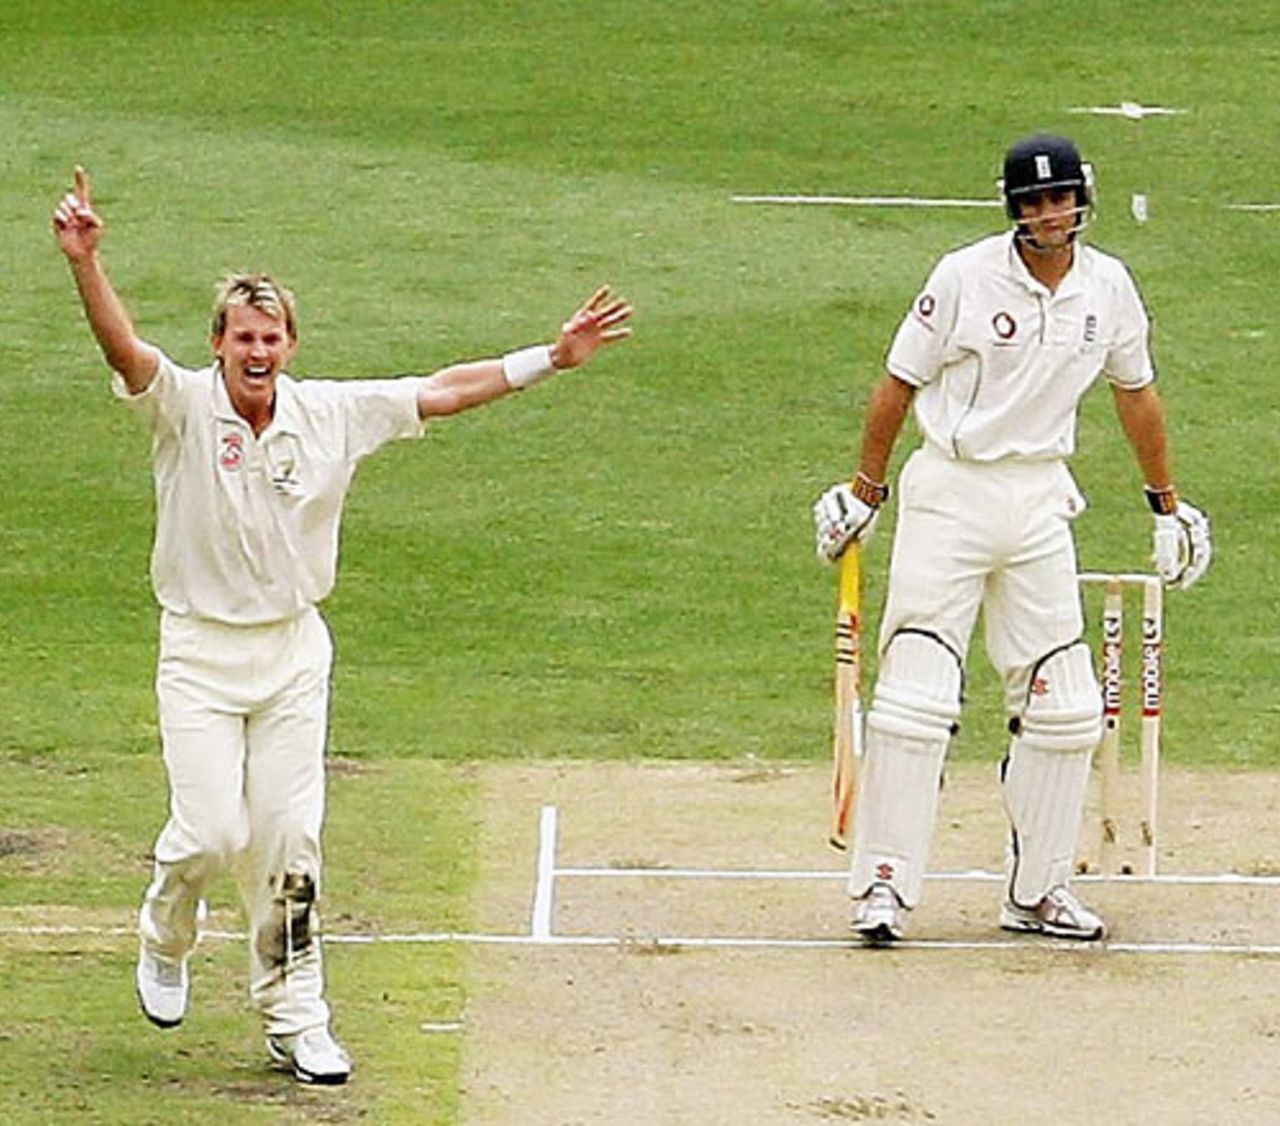 Brett Lee removes Alastair Cook, Australia v England, 4th Test, MCG, December 26, 2006